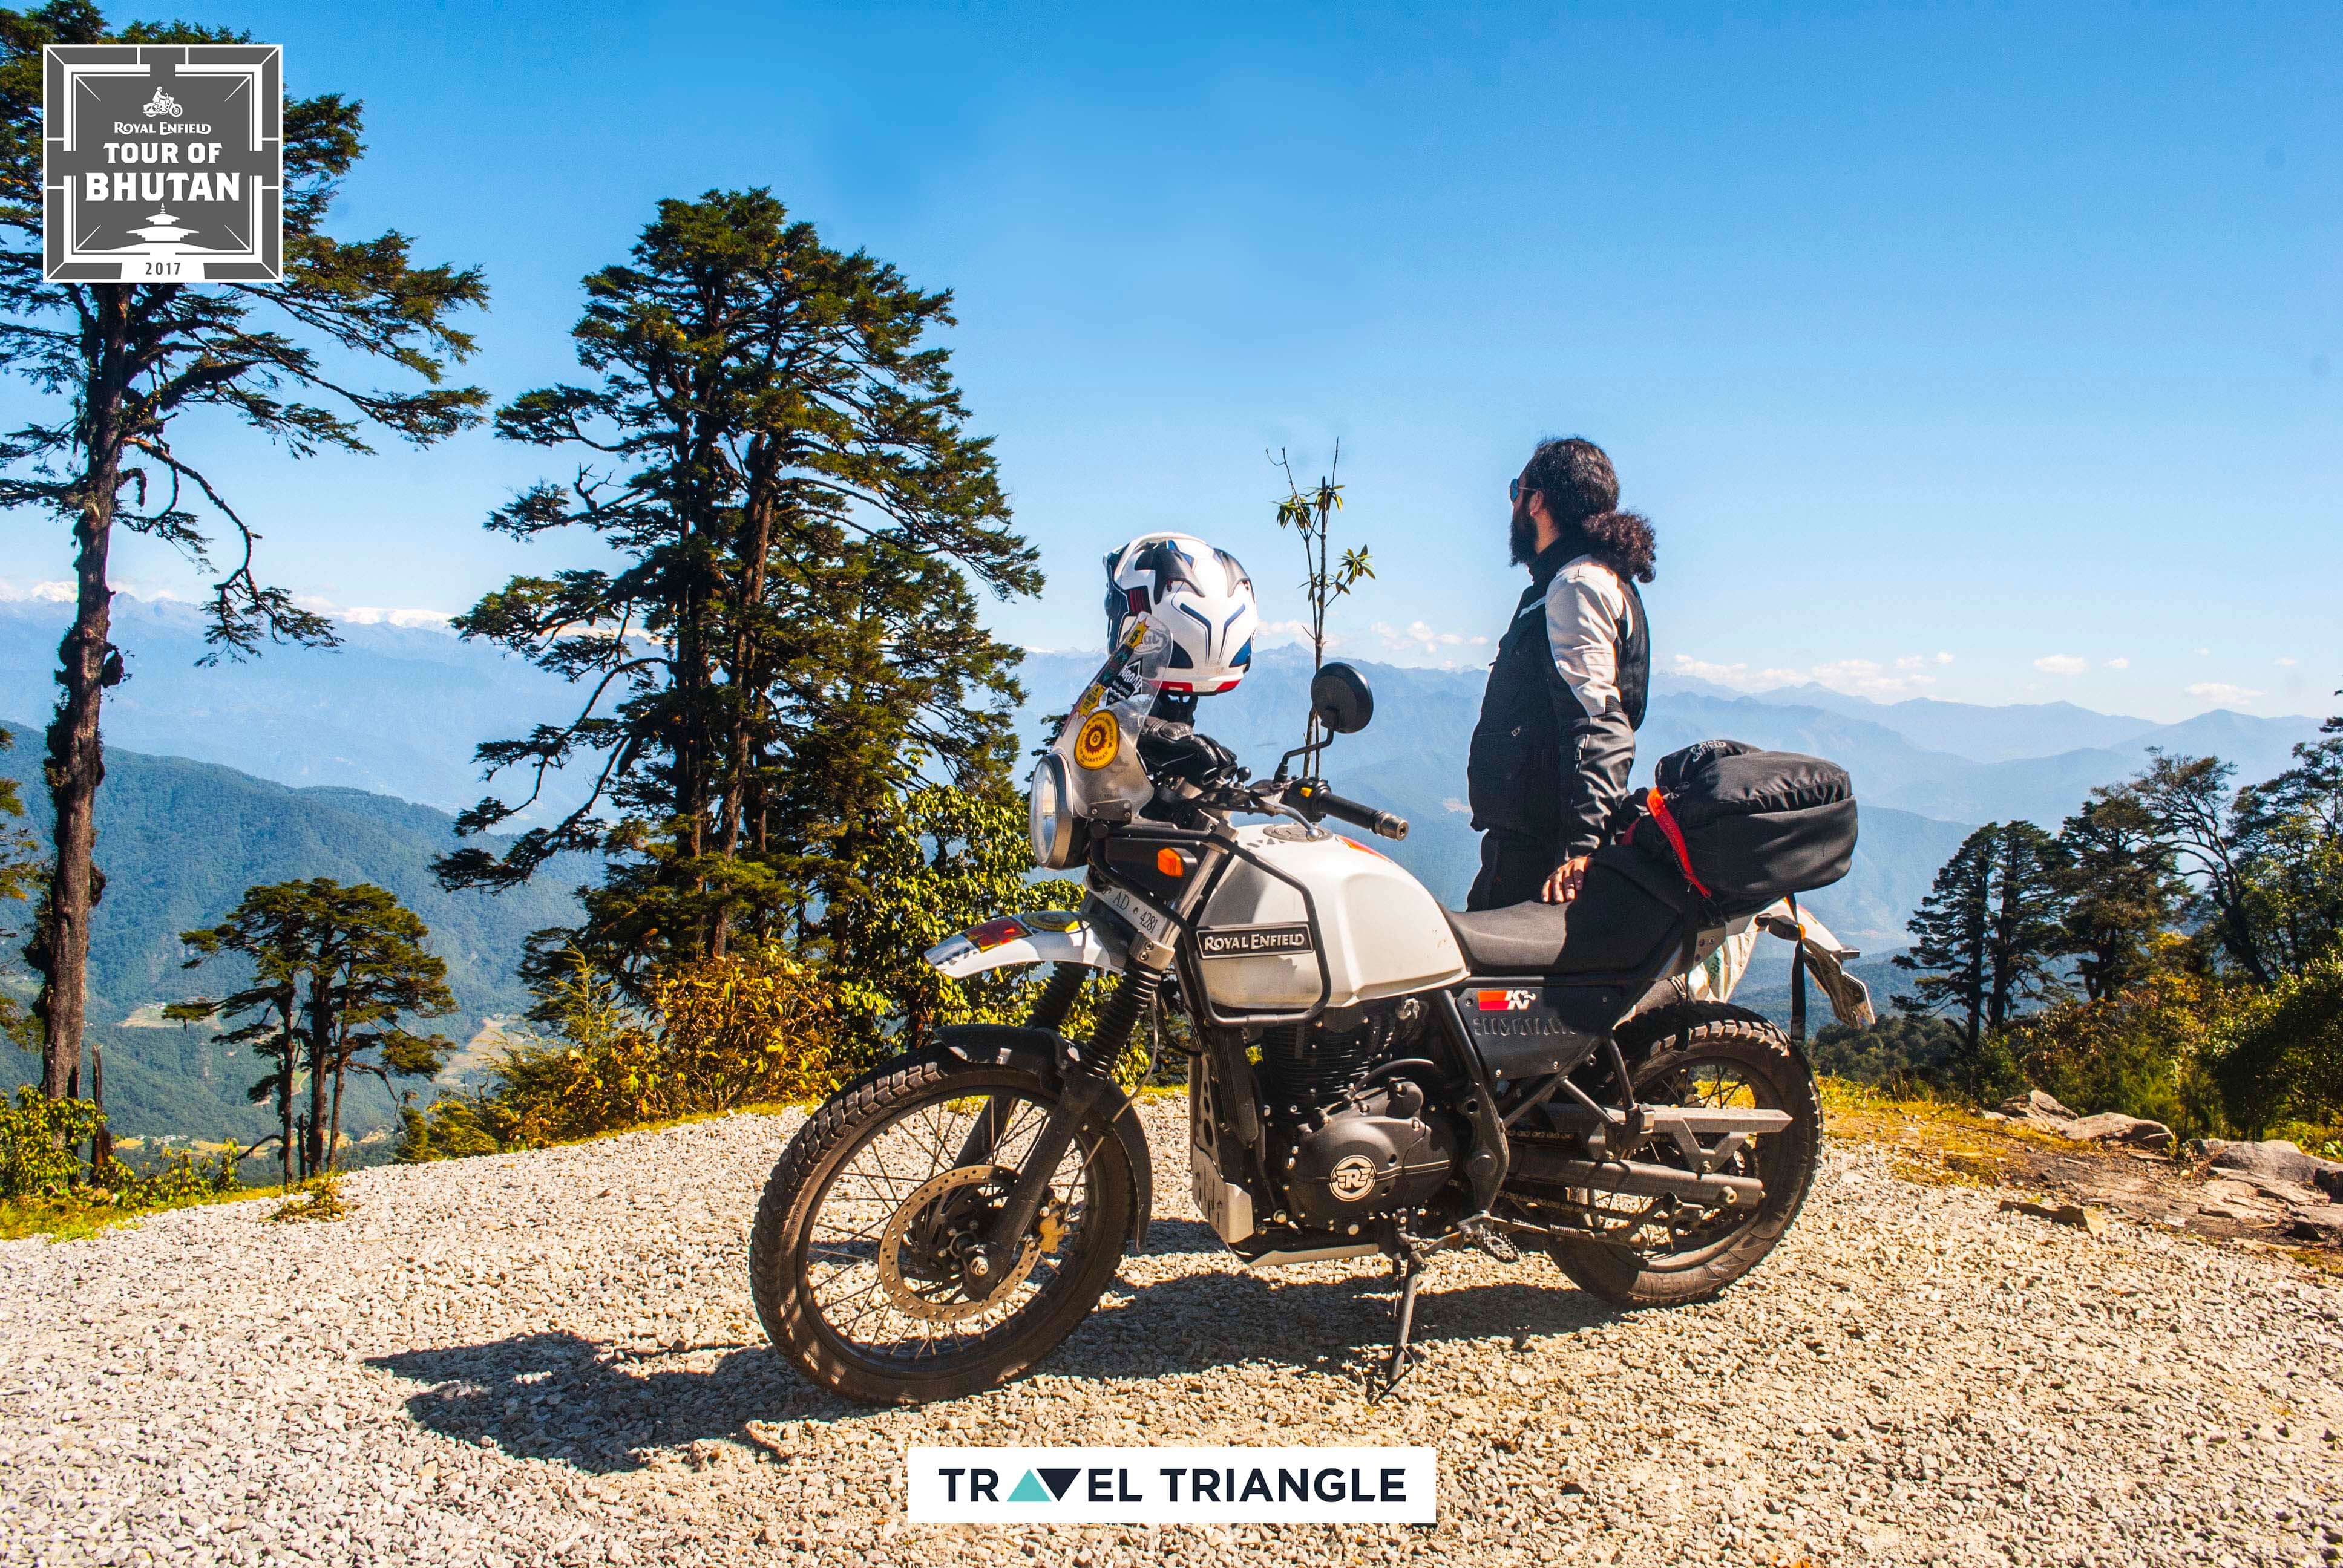 Thimphu to Punakha: looking at the scenic views